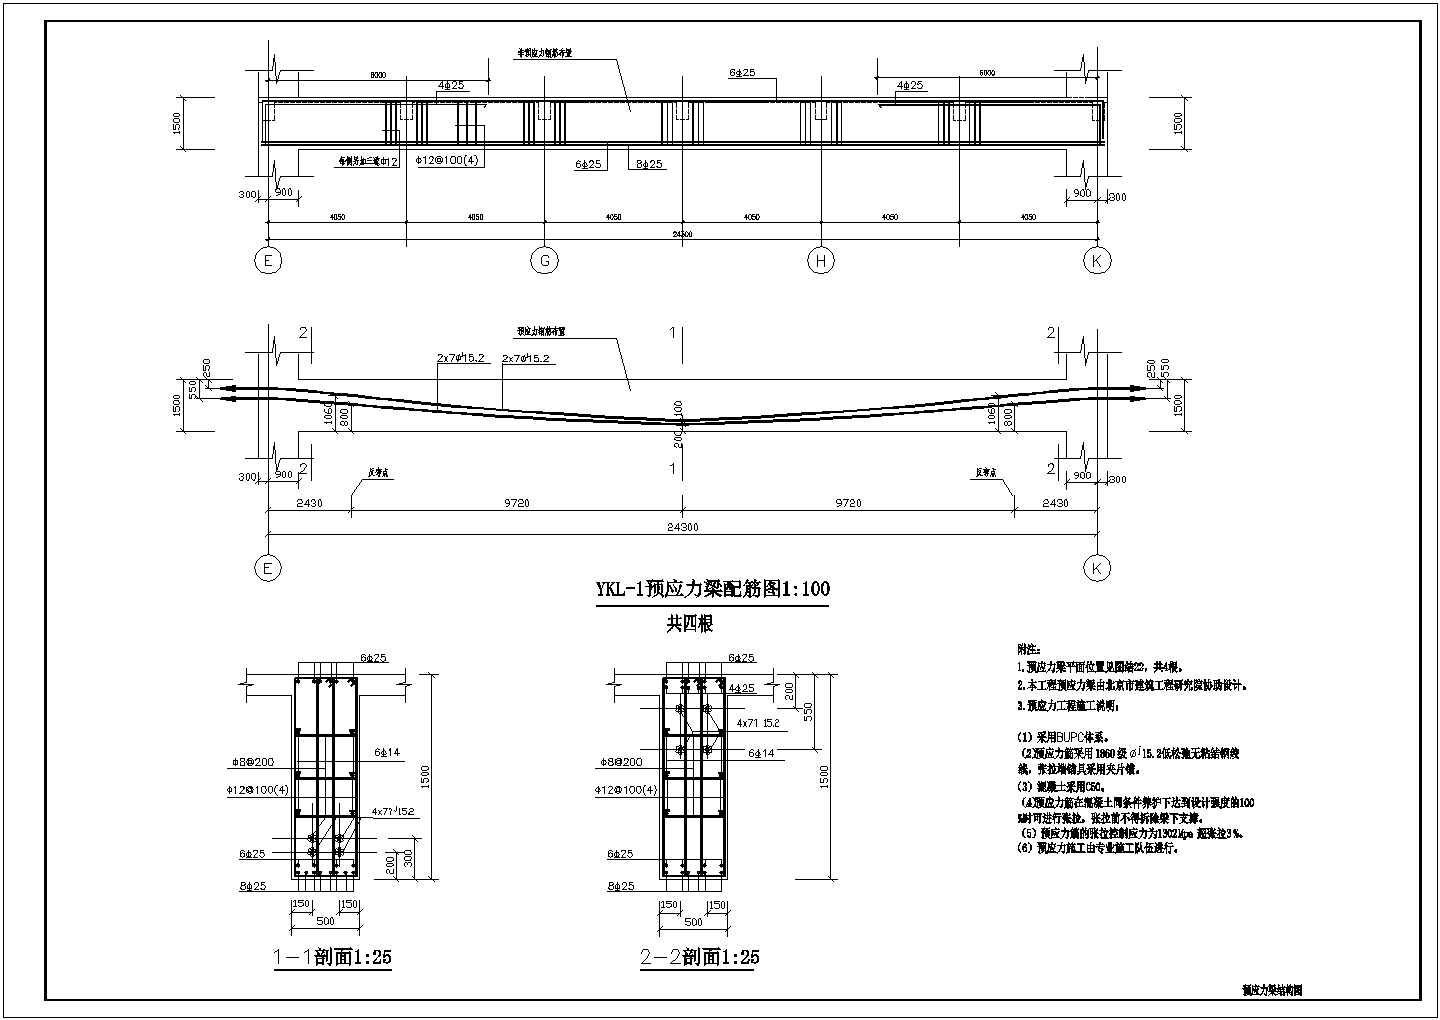 18G901-1：混凝土结构施工钢筋排布规则与构造详图（现浇混凝土框架、剪力墙、梁、板）-中国建筑标准设计网